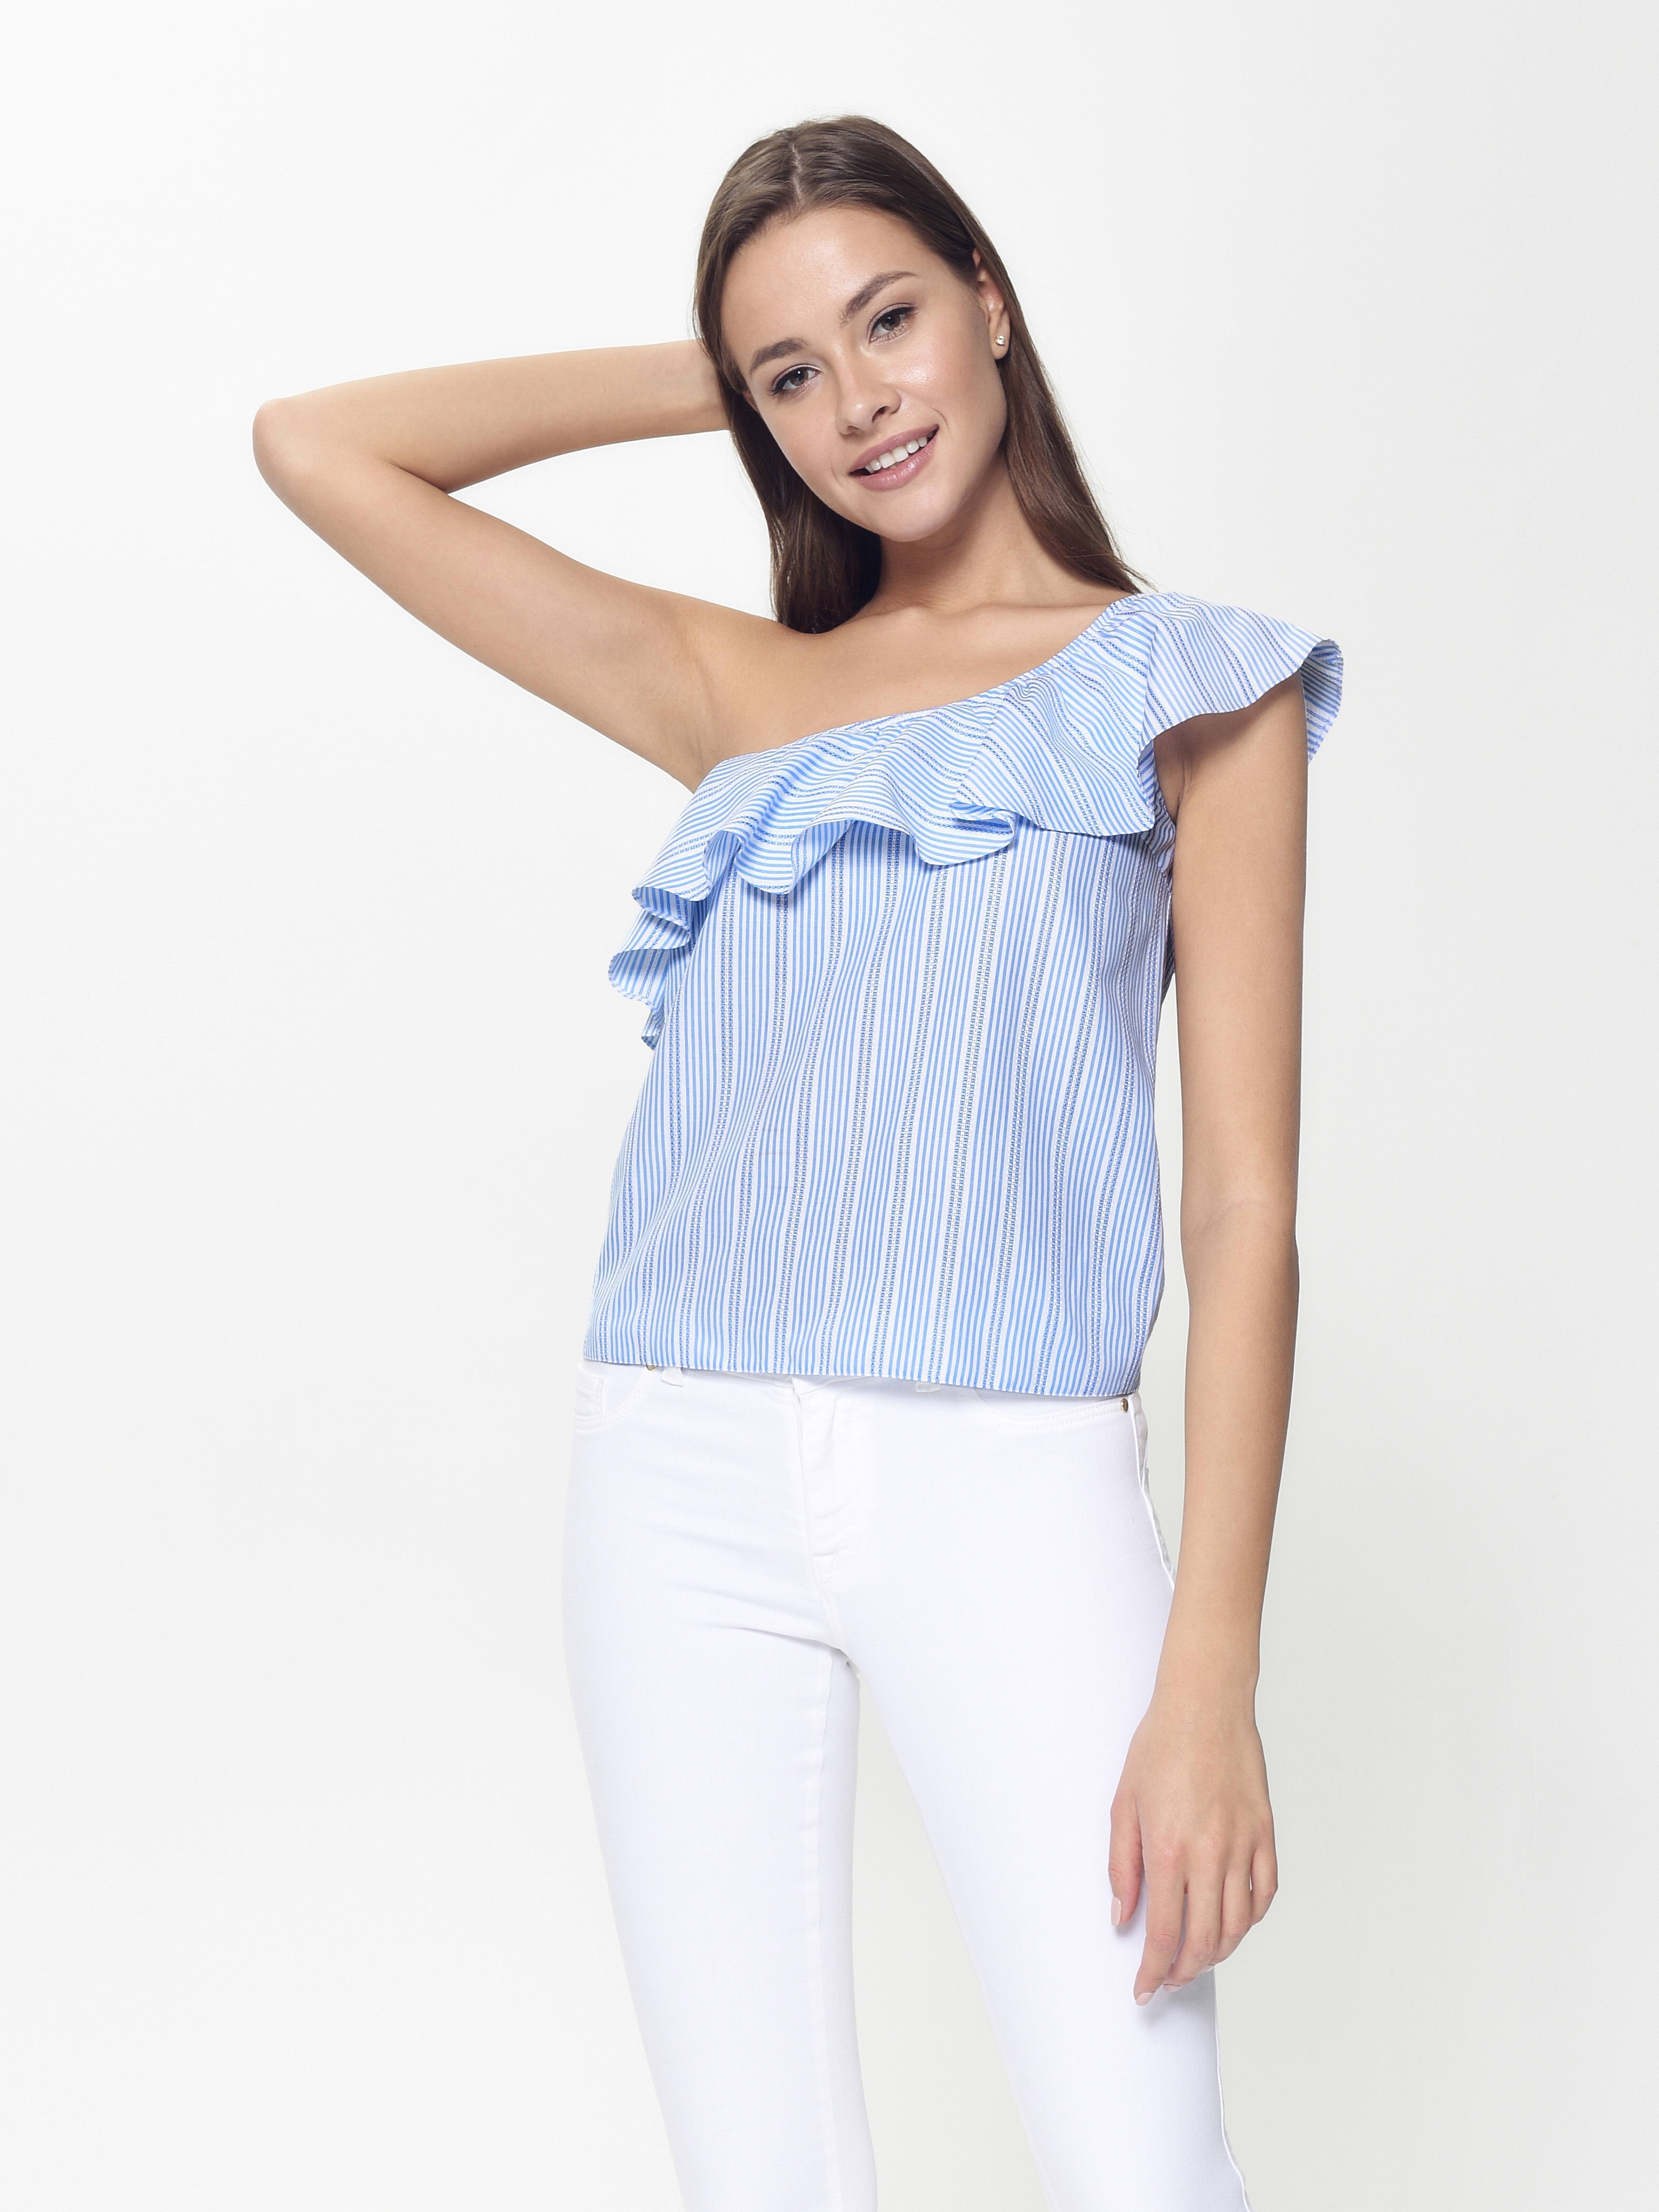 Ультрамодная блузка на одно плечо LBL 929 Conte ⭐️, цвет blue-white, размер 170-84-90